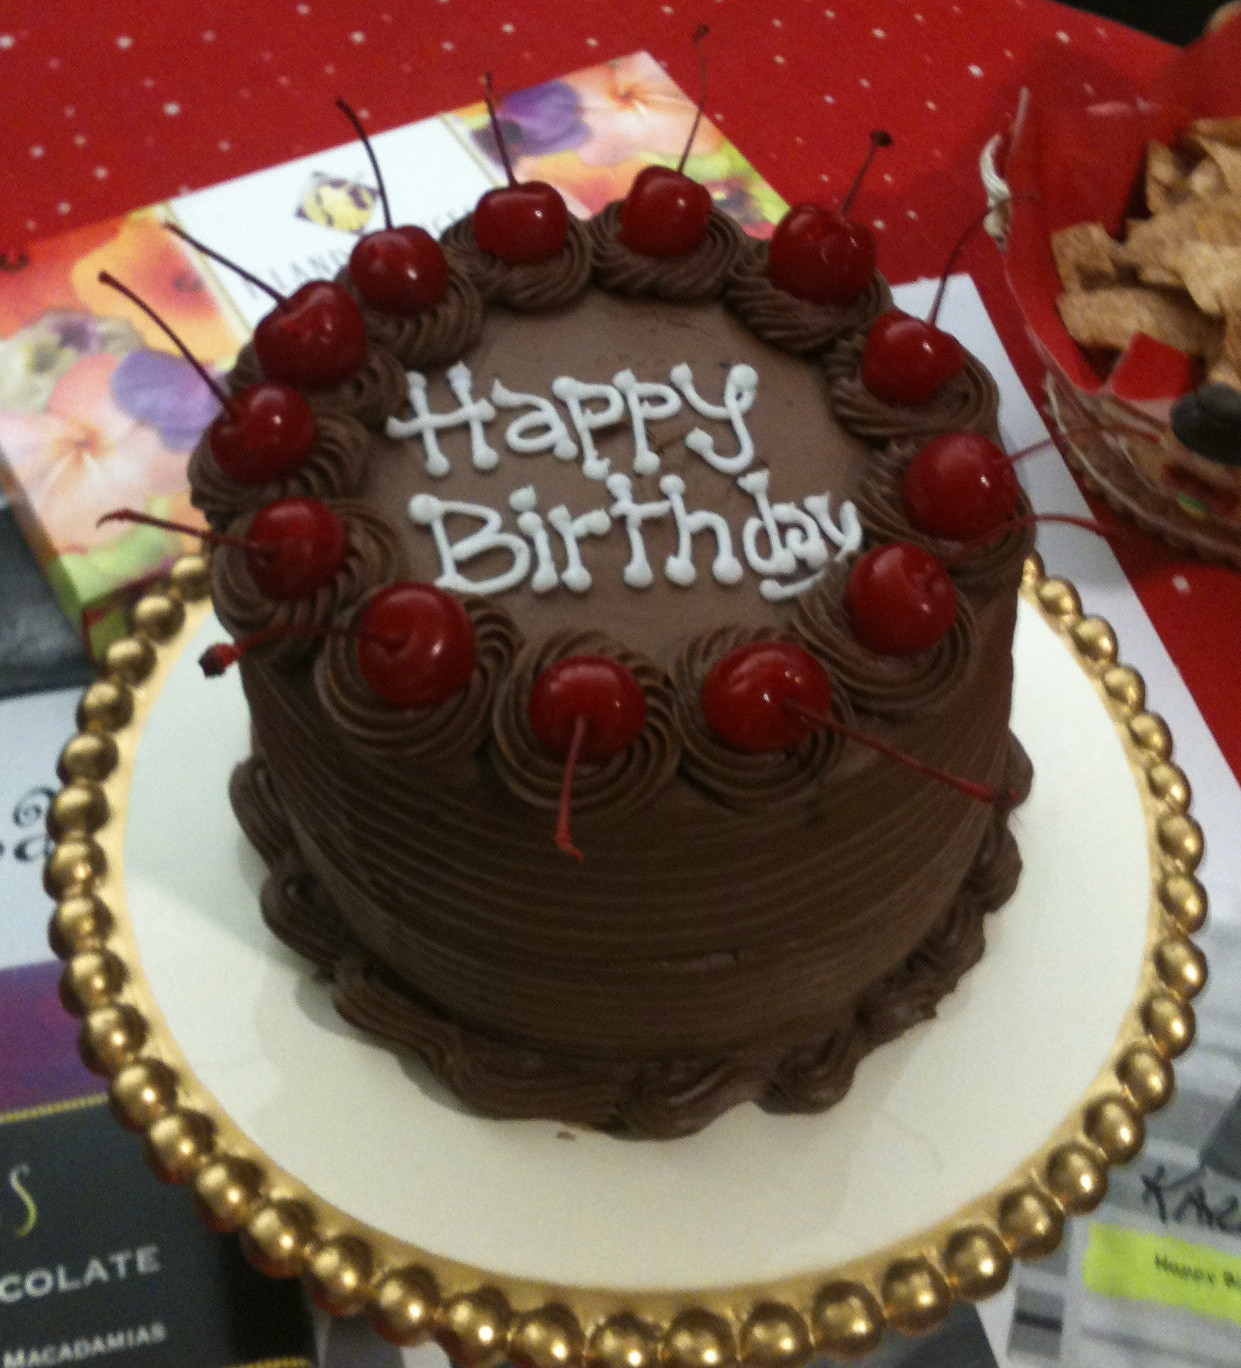 Best ideas about Happy Birthday Karen Cake
. Save or Pin Lolo s Layers Happy Birthday Karen Now.